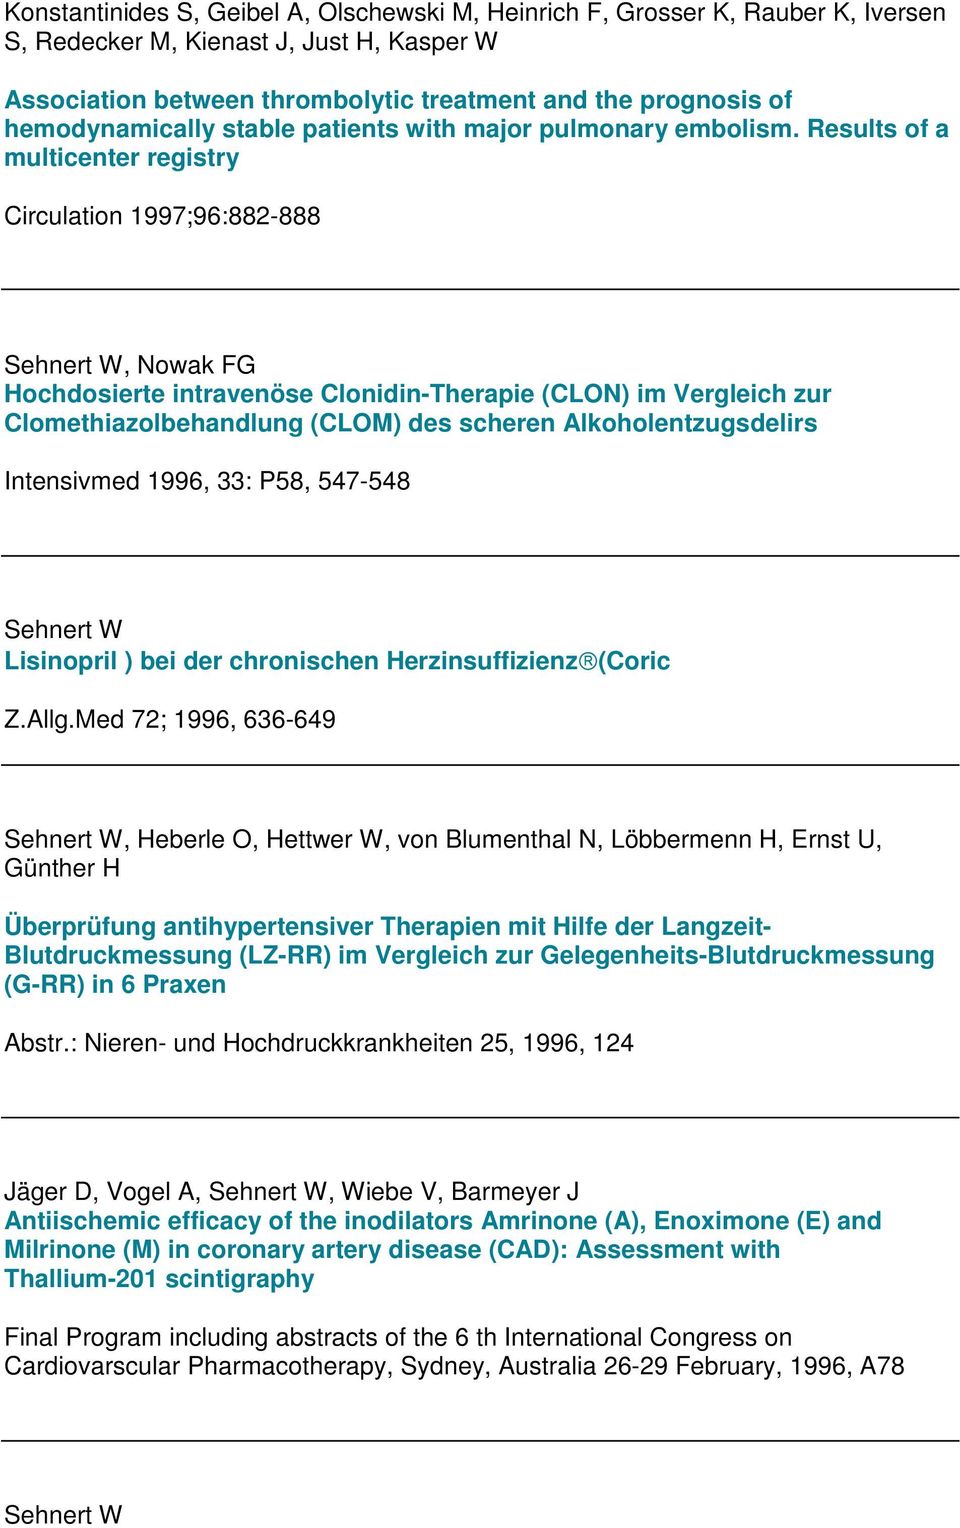 Results of a multicenter registry Circulation 1997;96:882-888, Nowak FG Hochdosierte intravenöse Clonidin-Therapie (CLON) im Vergleich zur Clomethiazolbehandlung (CLOM) des scheren